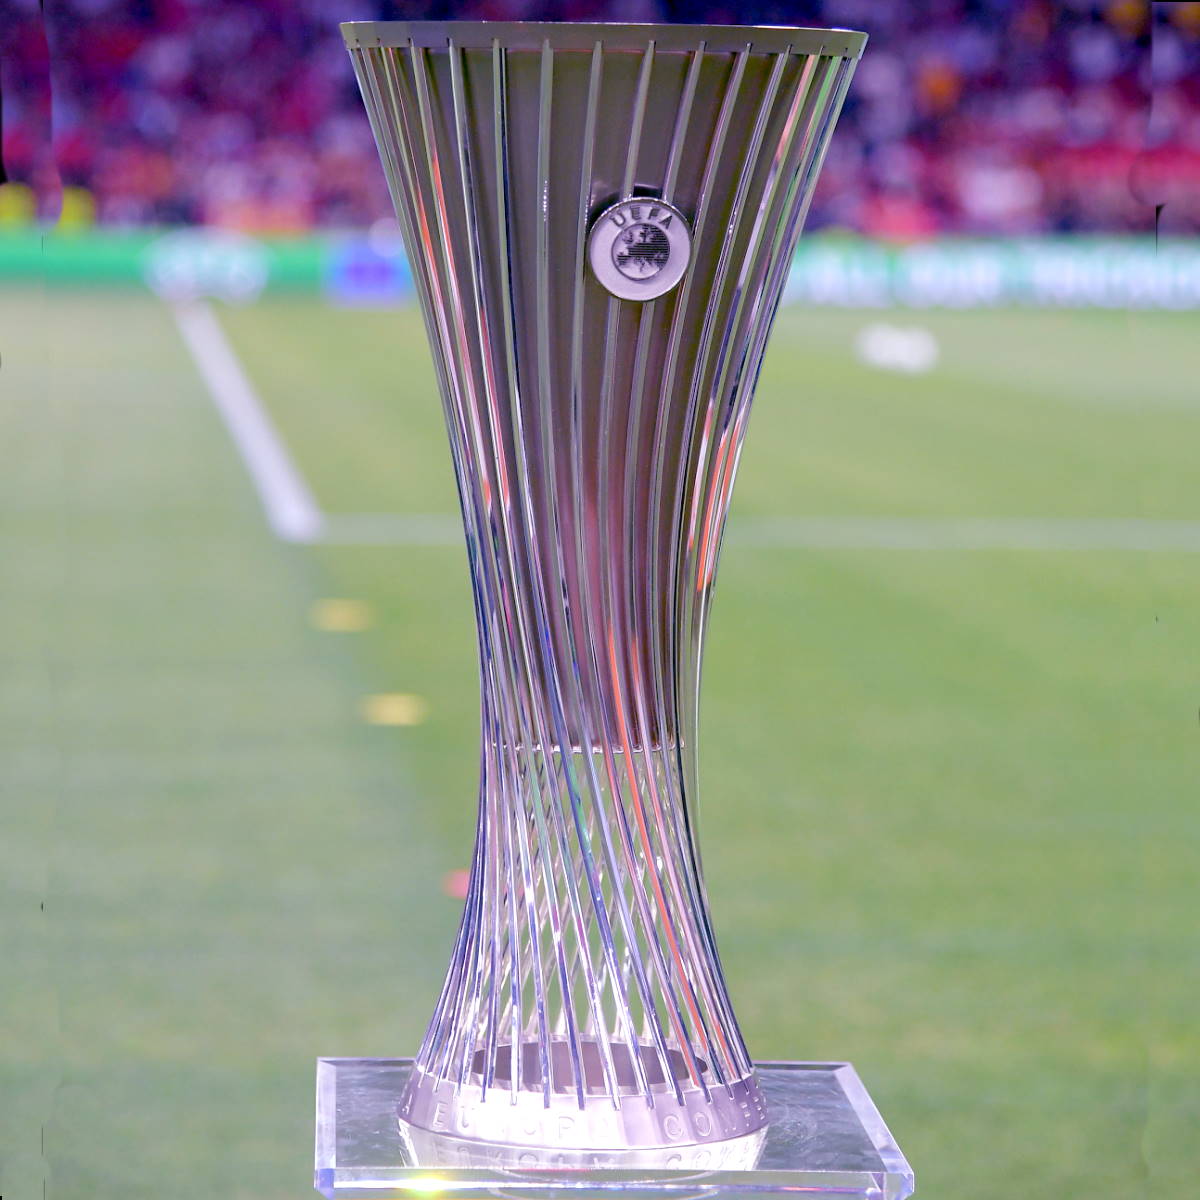 La Roma si aggiudica la prima edizione della Conference League battendo 1-0 il Feyenoord